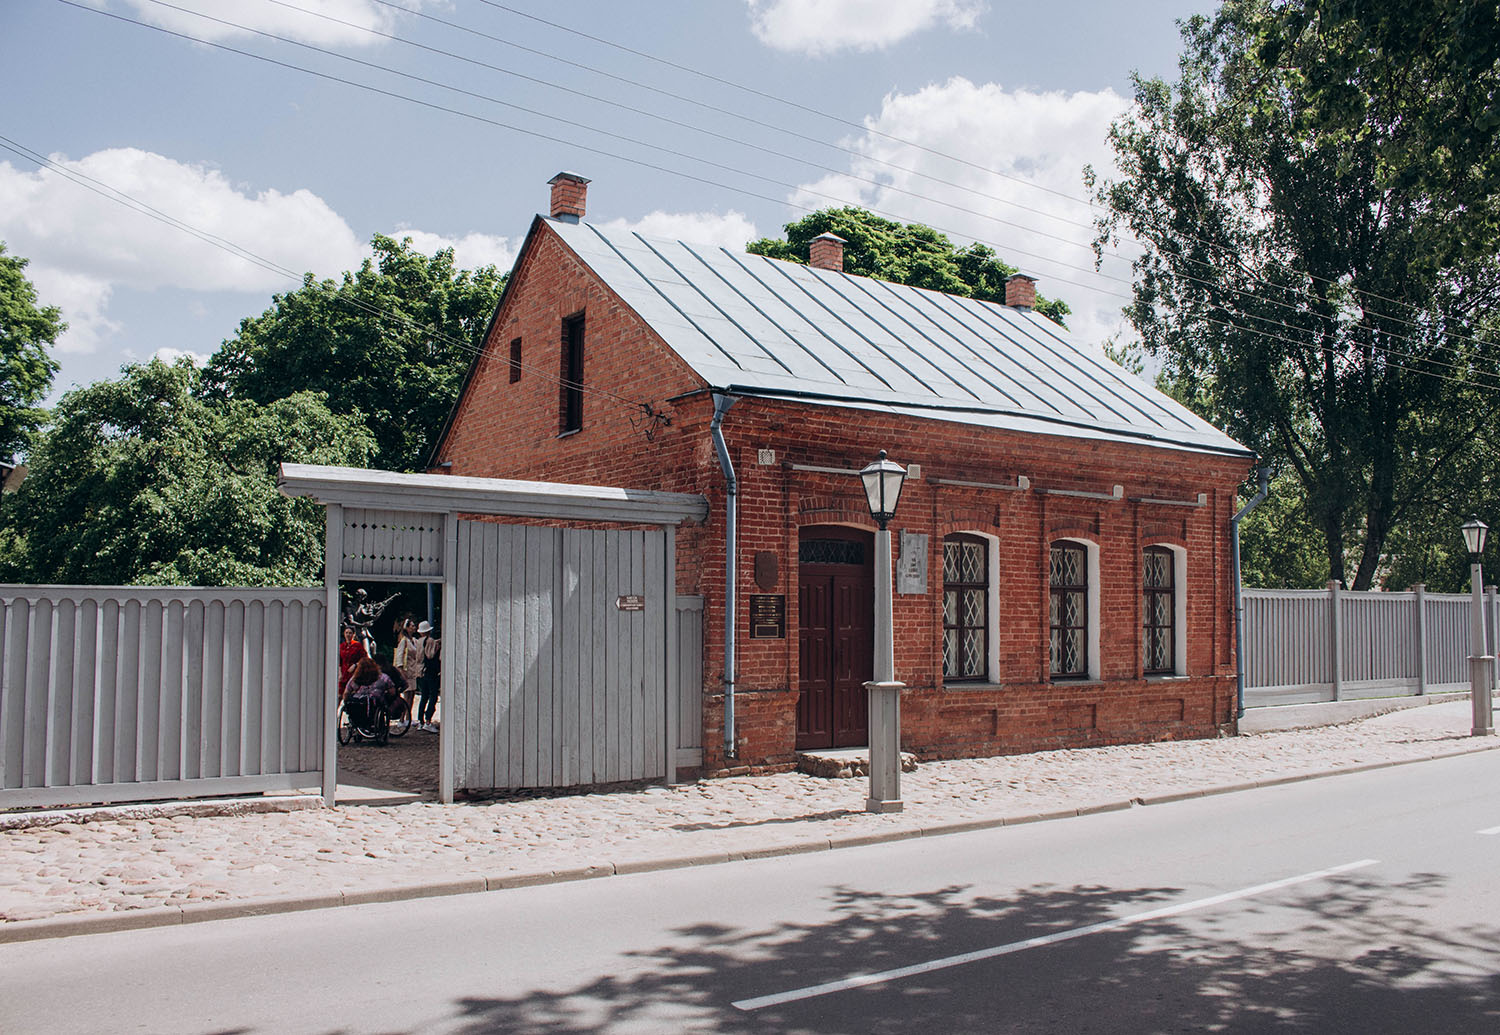 Витебск улица Кондратьева 11 дом-музей марка Шагала. Дом в Витебске, в котором родился Клейн. Ул шагала